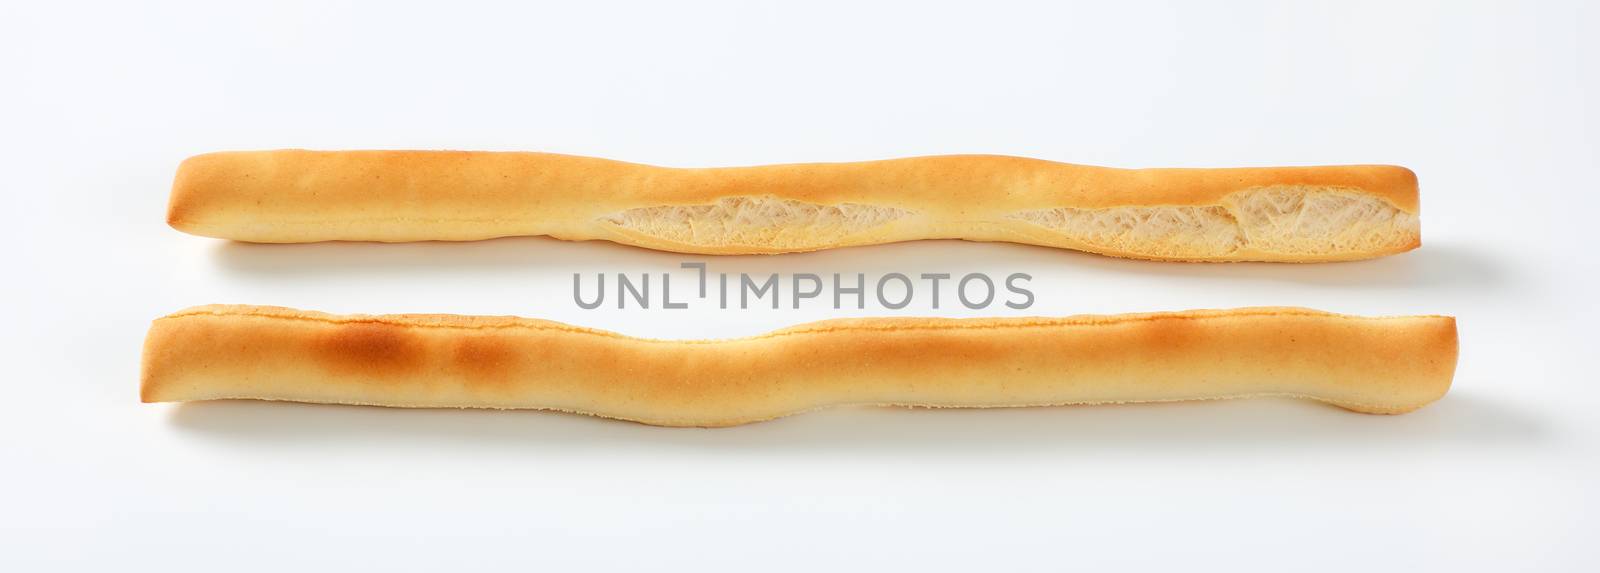 crispy bread sticks by Digifoodstock